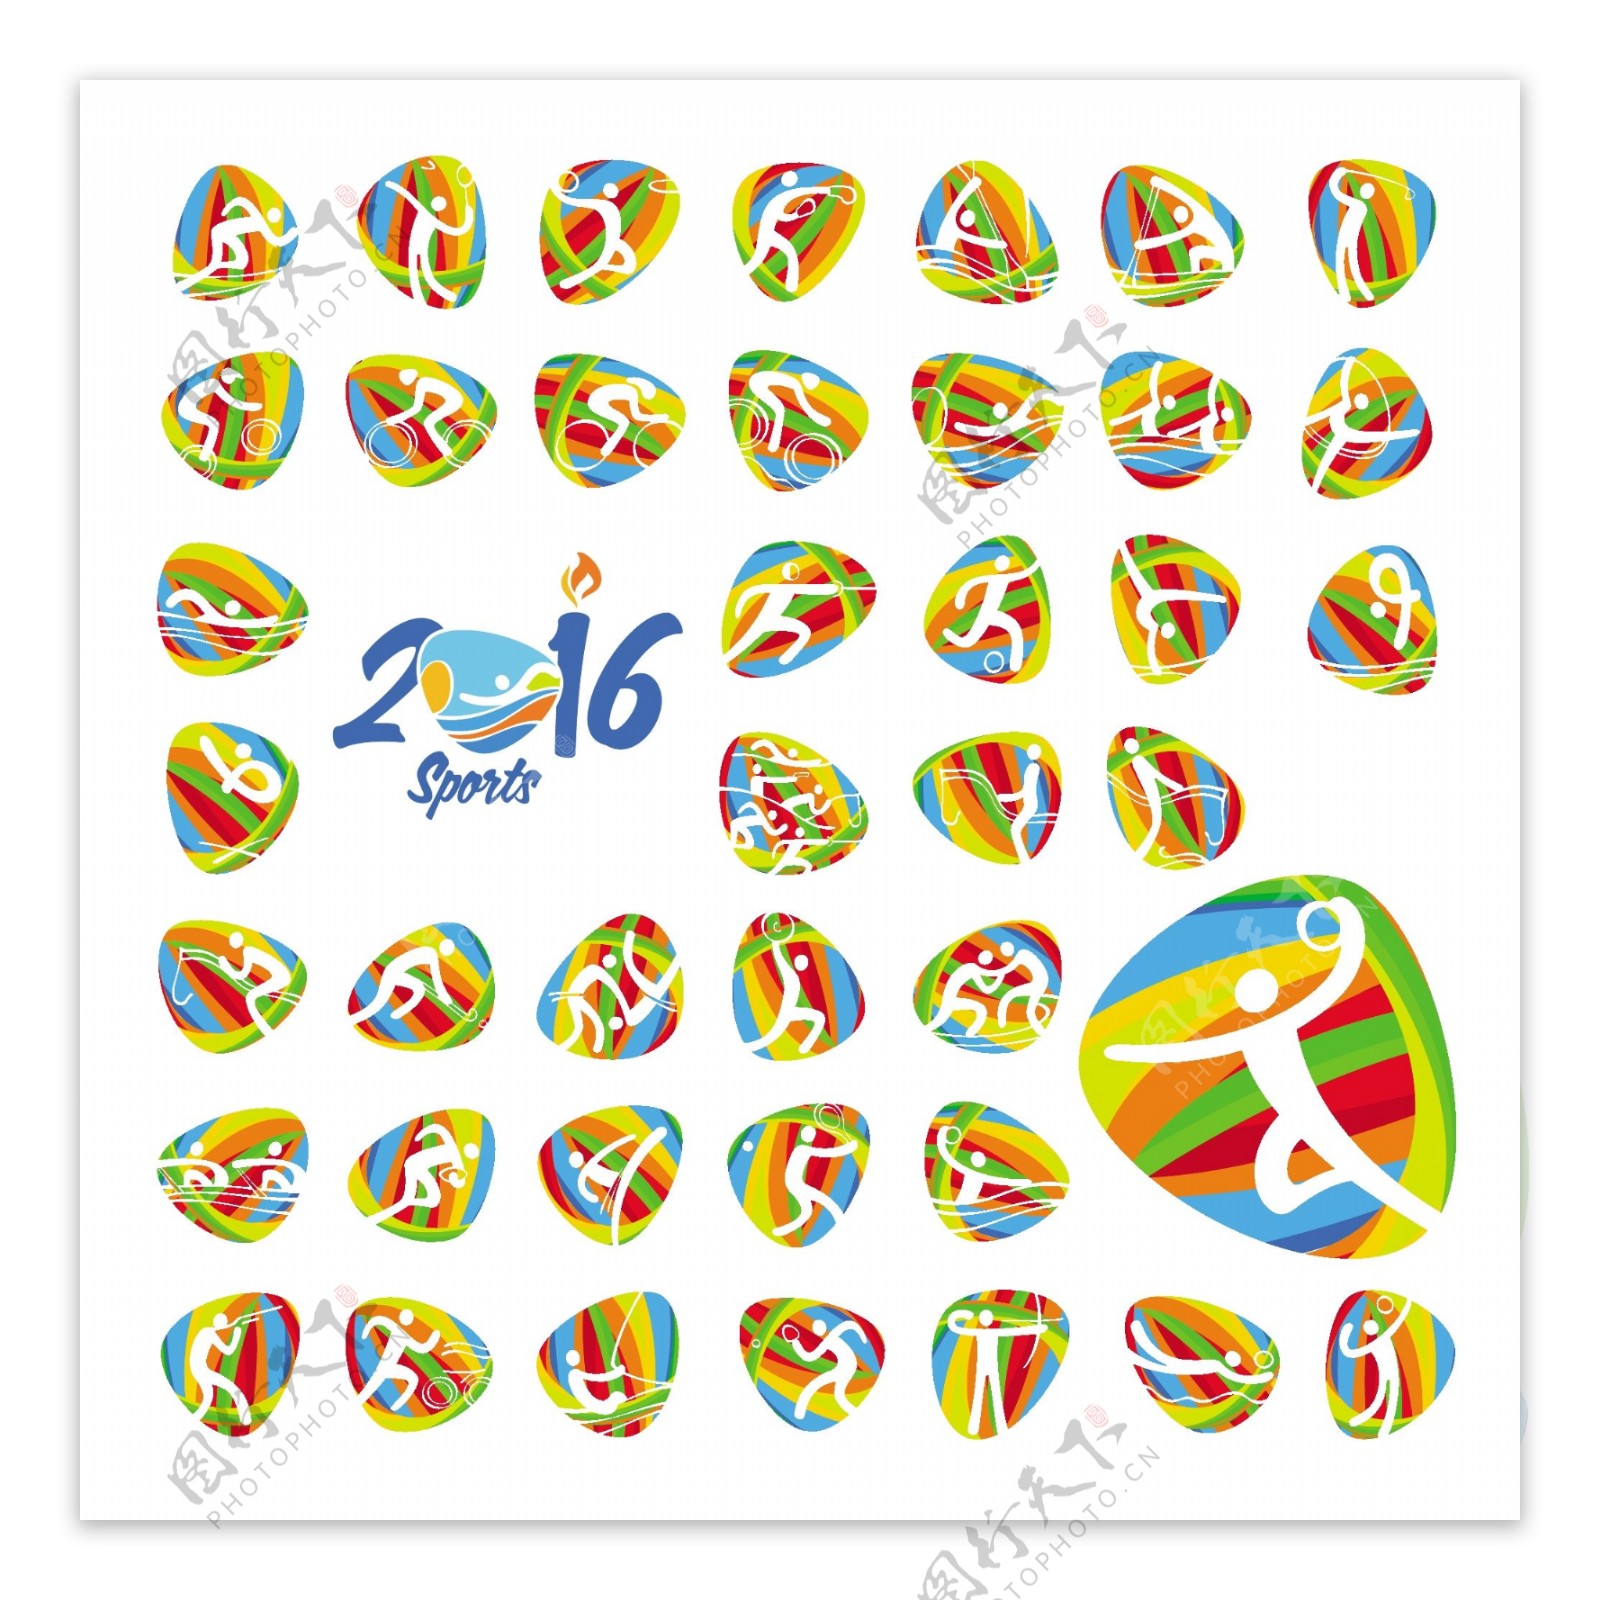 里约2016奥运会夏季体育图标集